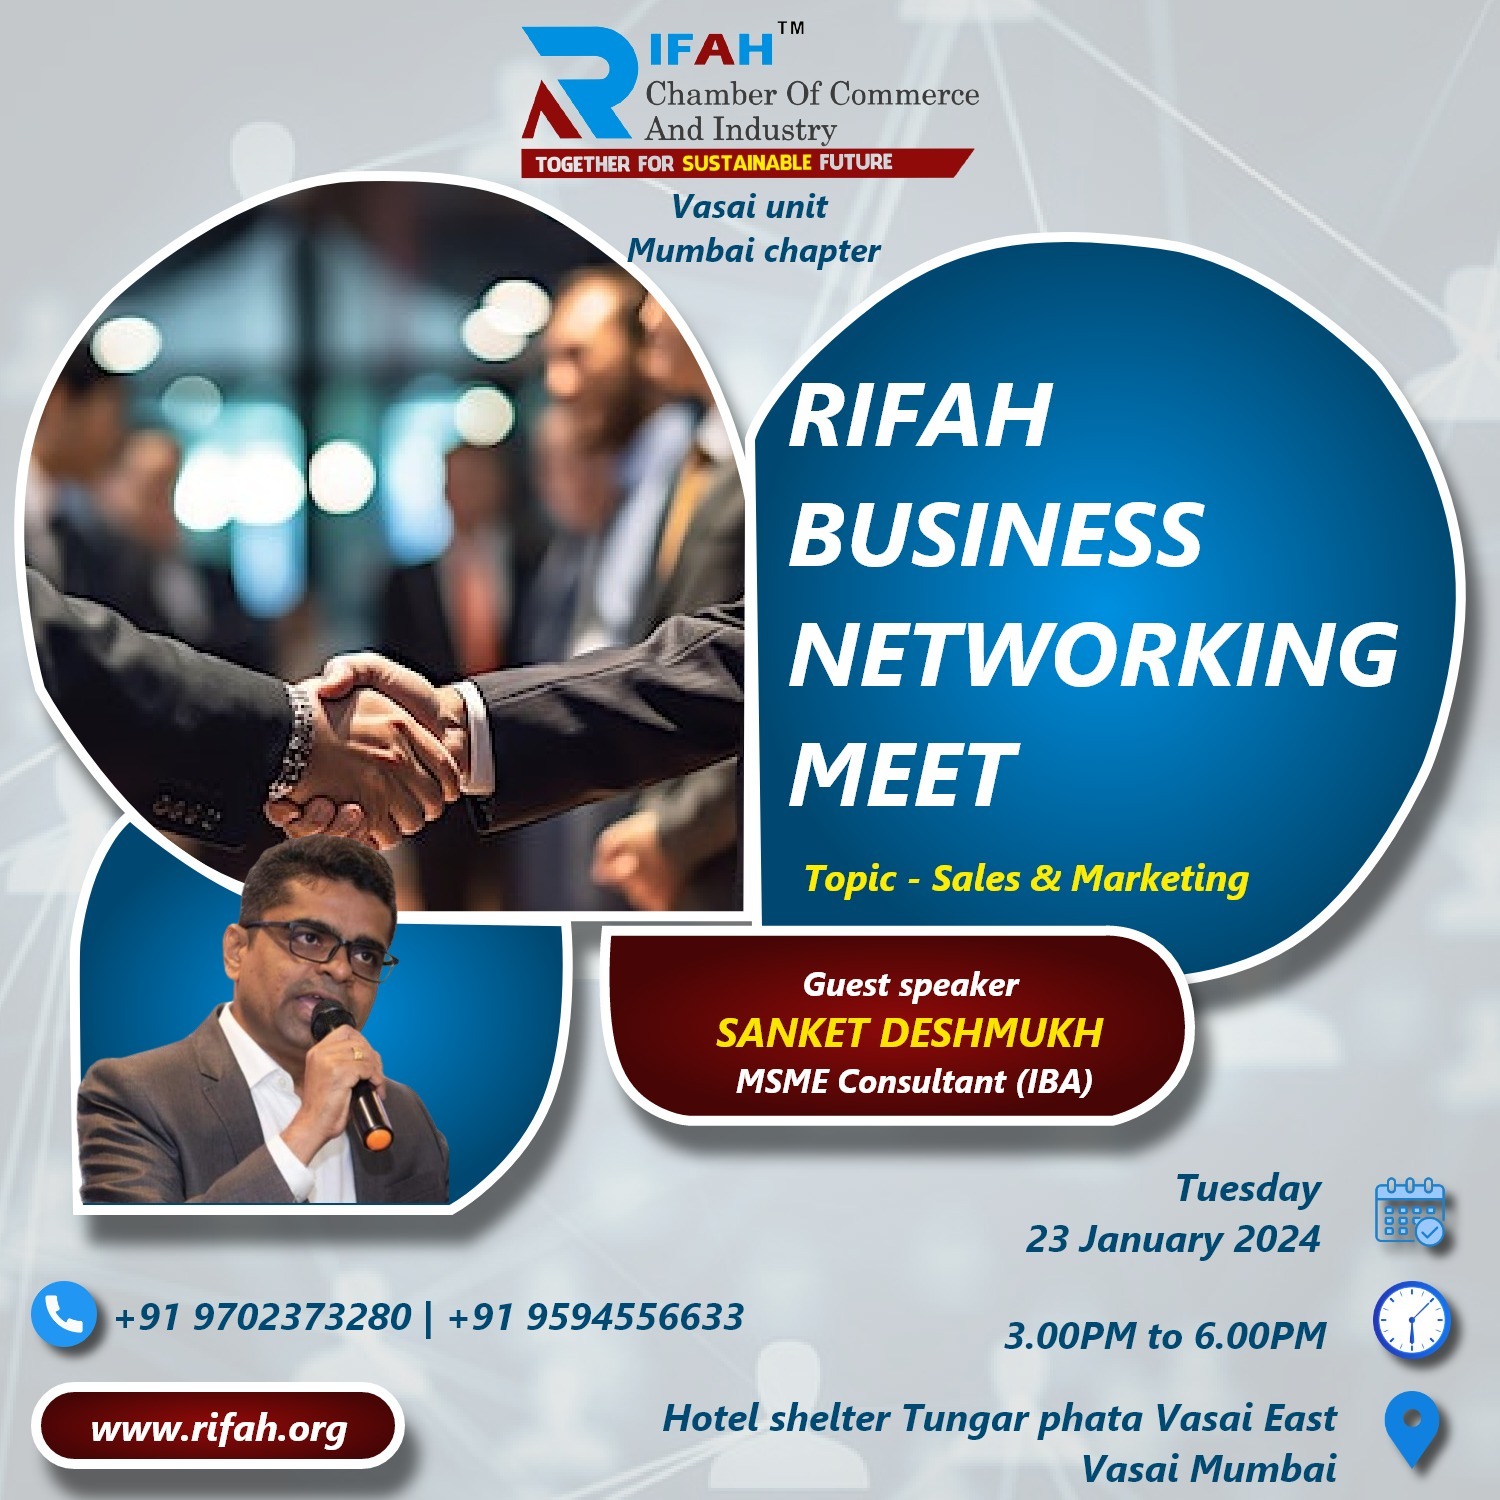 Rifah Business Meet, Vasai Unit, Mumbai Chapter